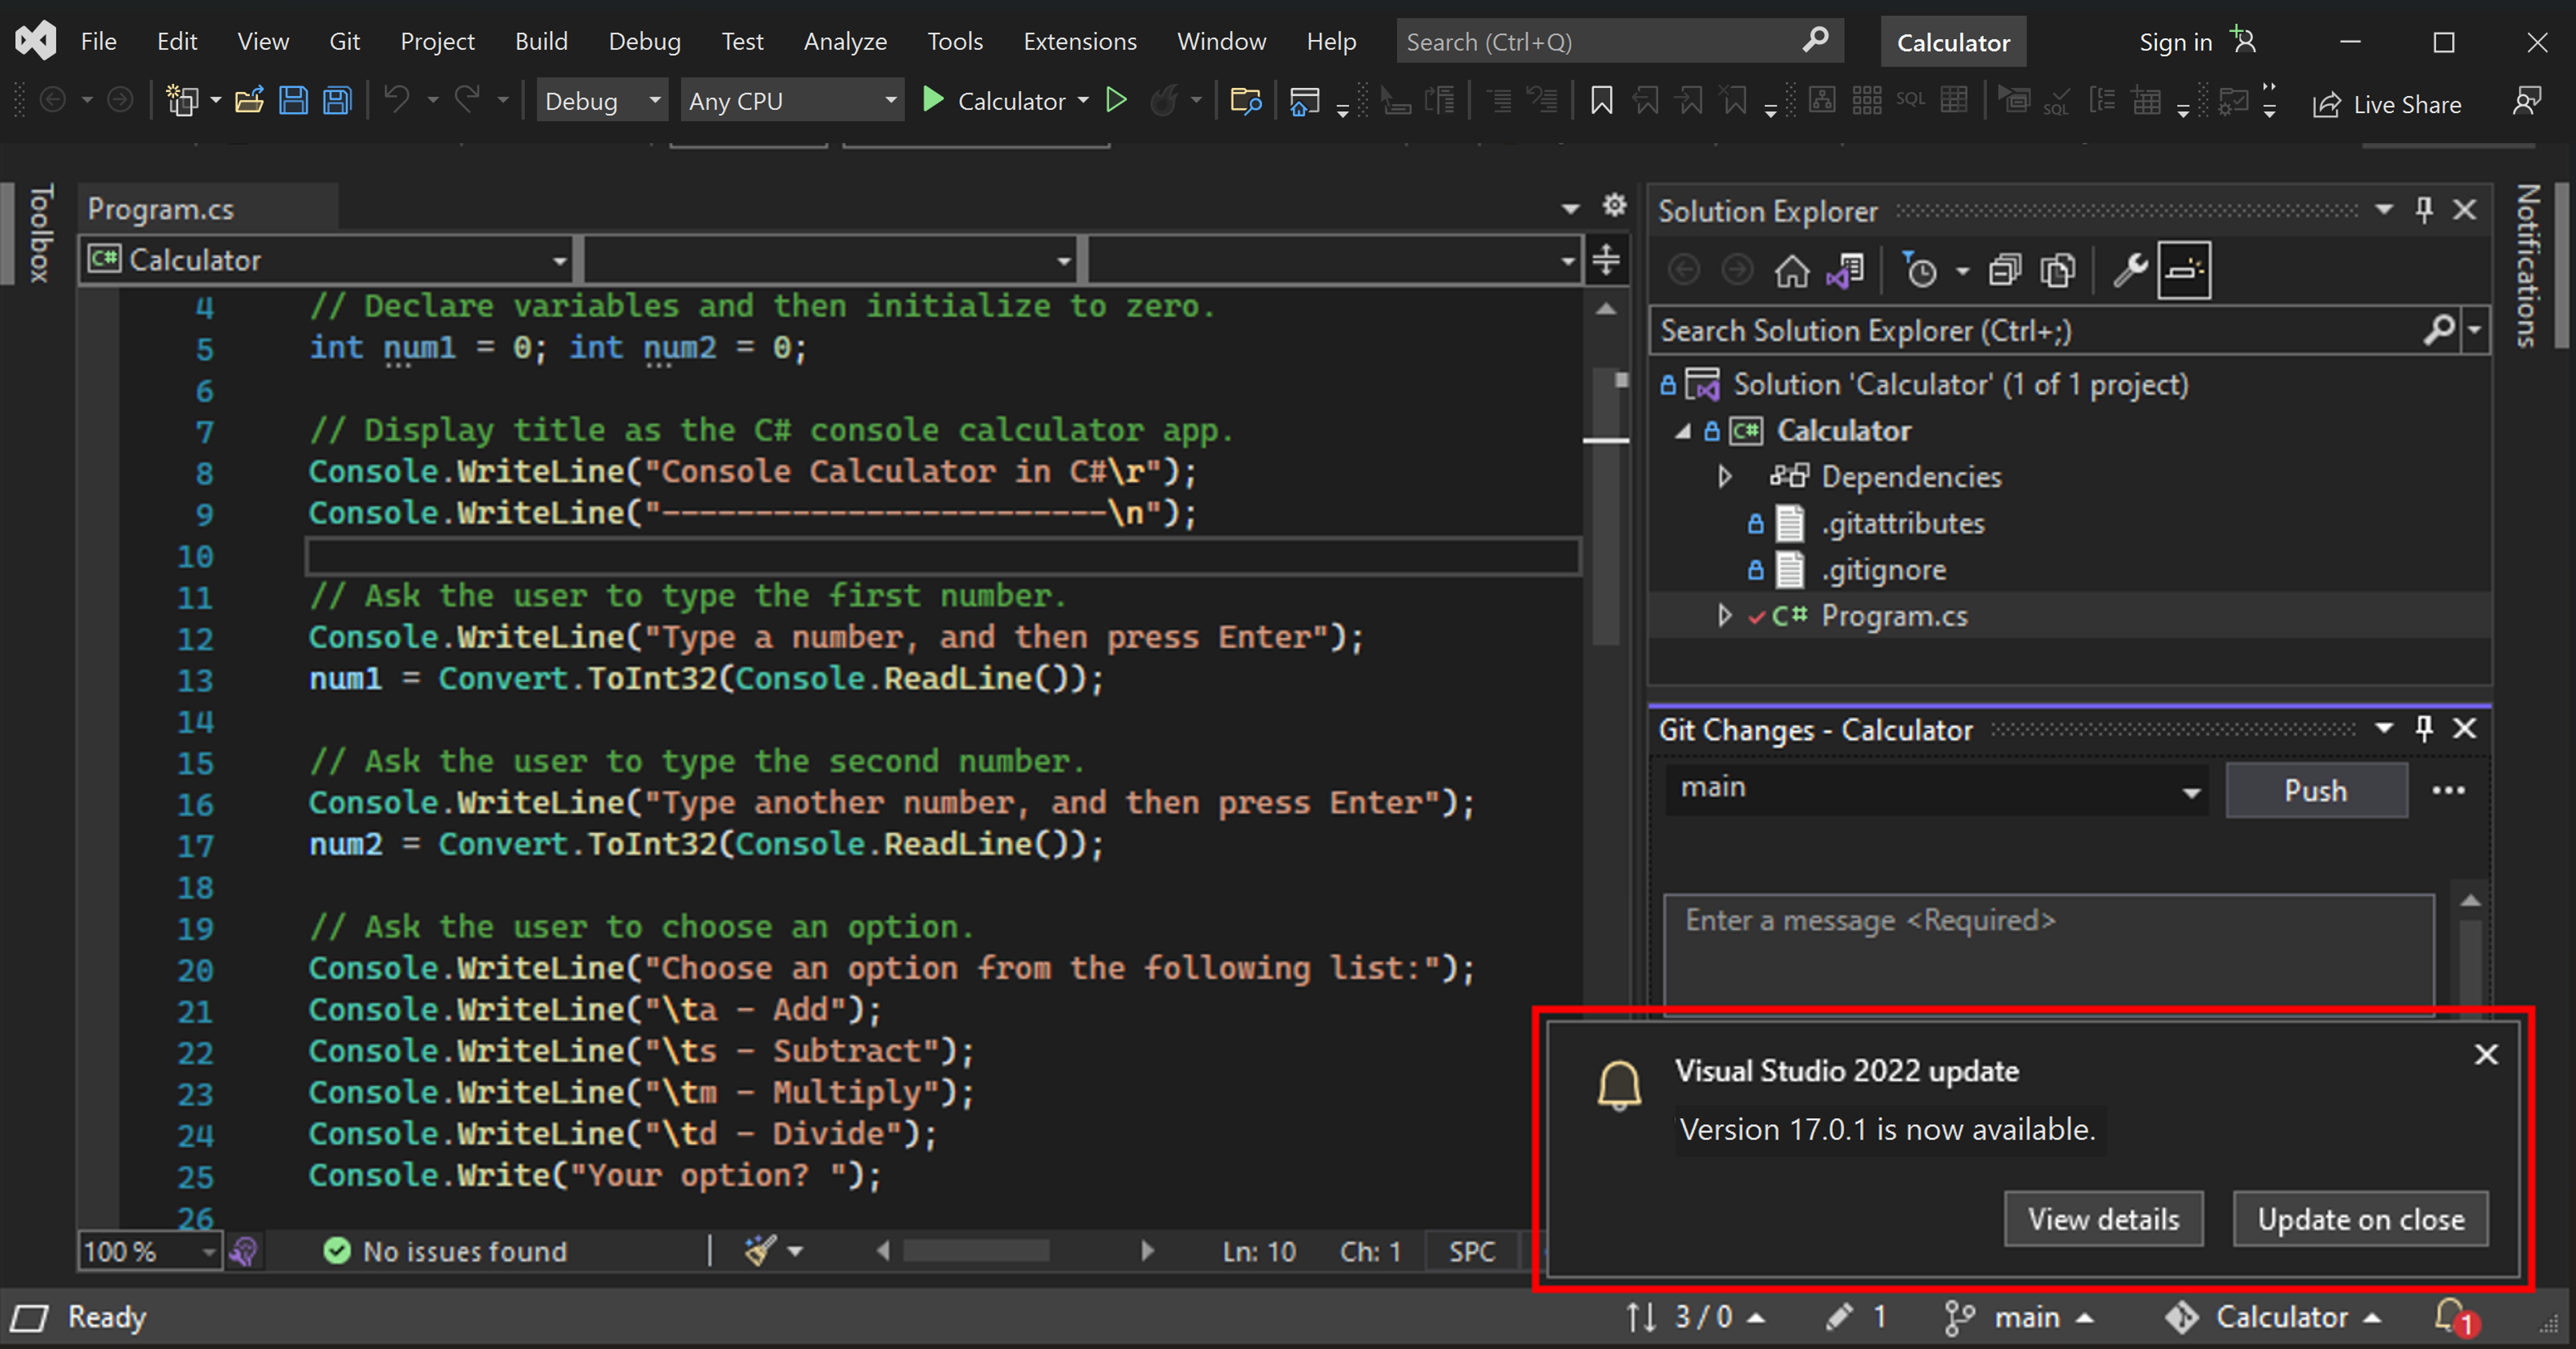 Captura de tela mostrando uma mensagem de atualização para o Visual Studio 2022 no canto inferior direito do IDE do Visual Studio.